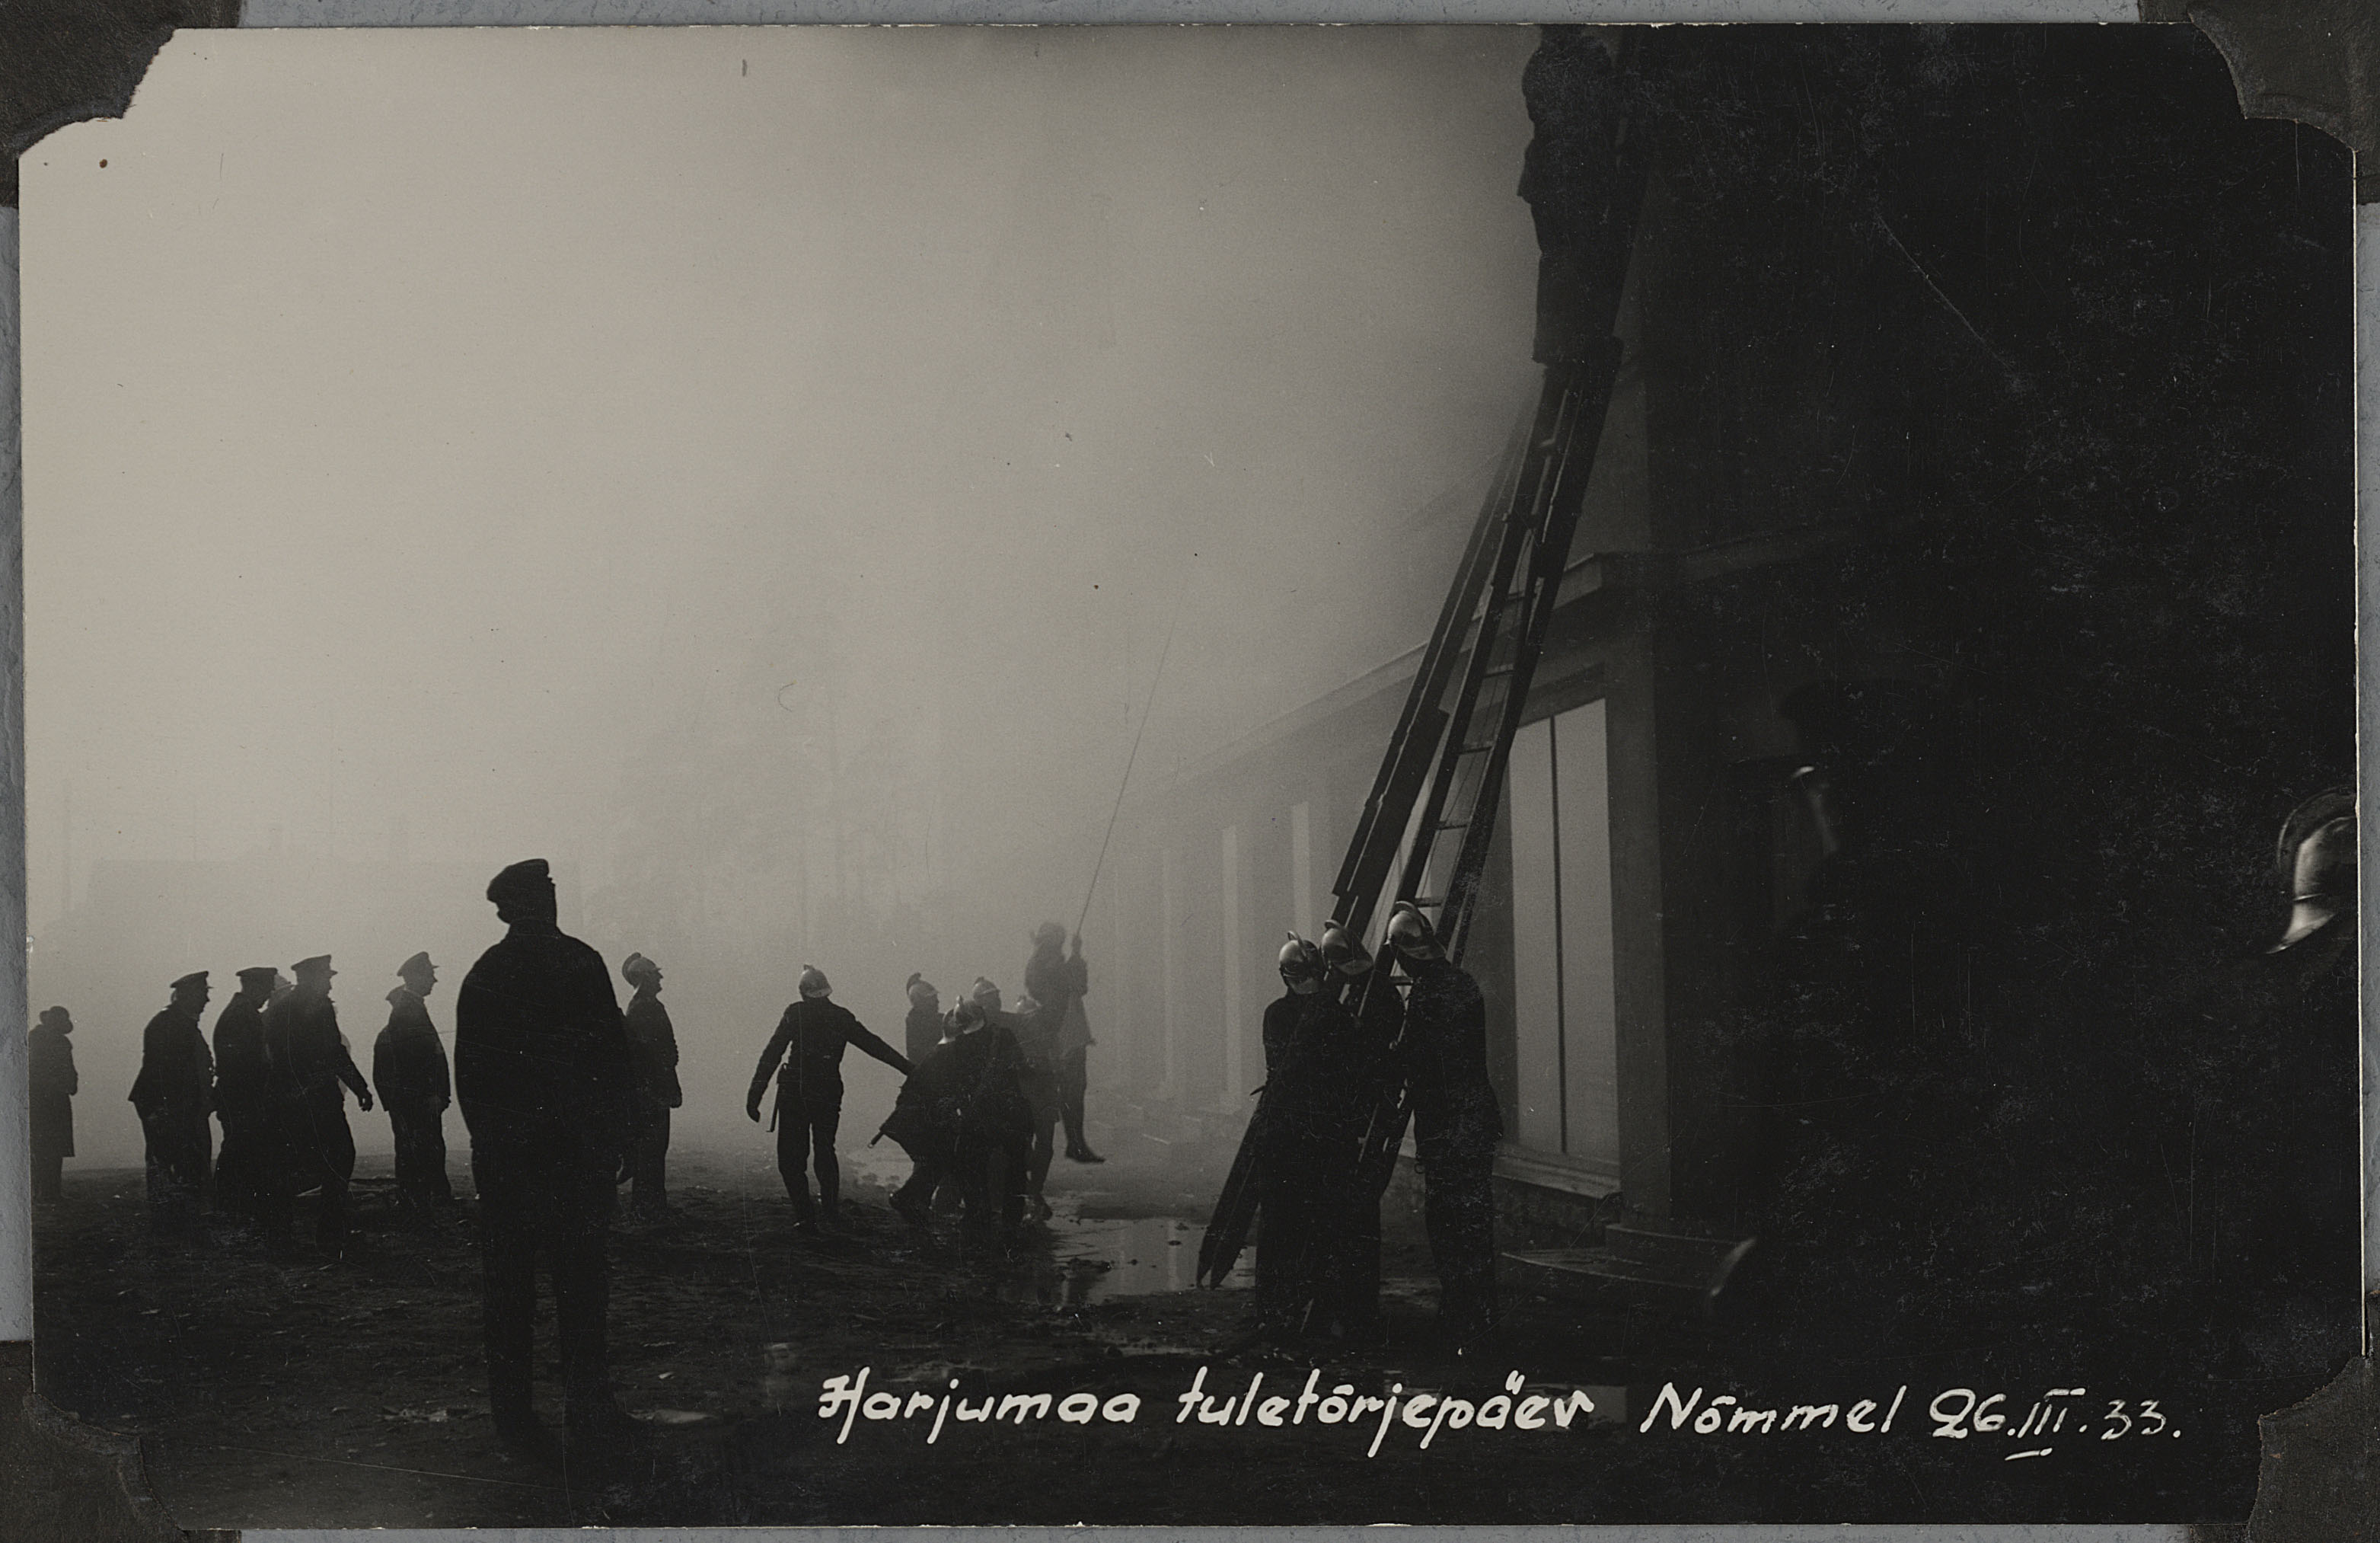 Harjumaa tuletõrjepäev Nõmmel, 1933.a.